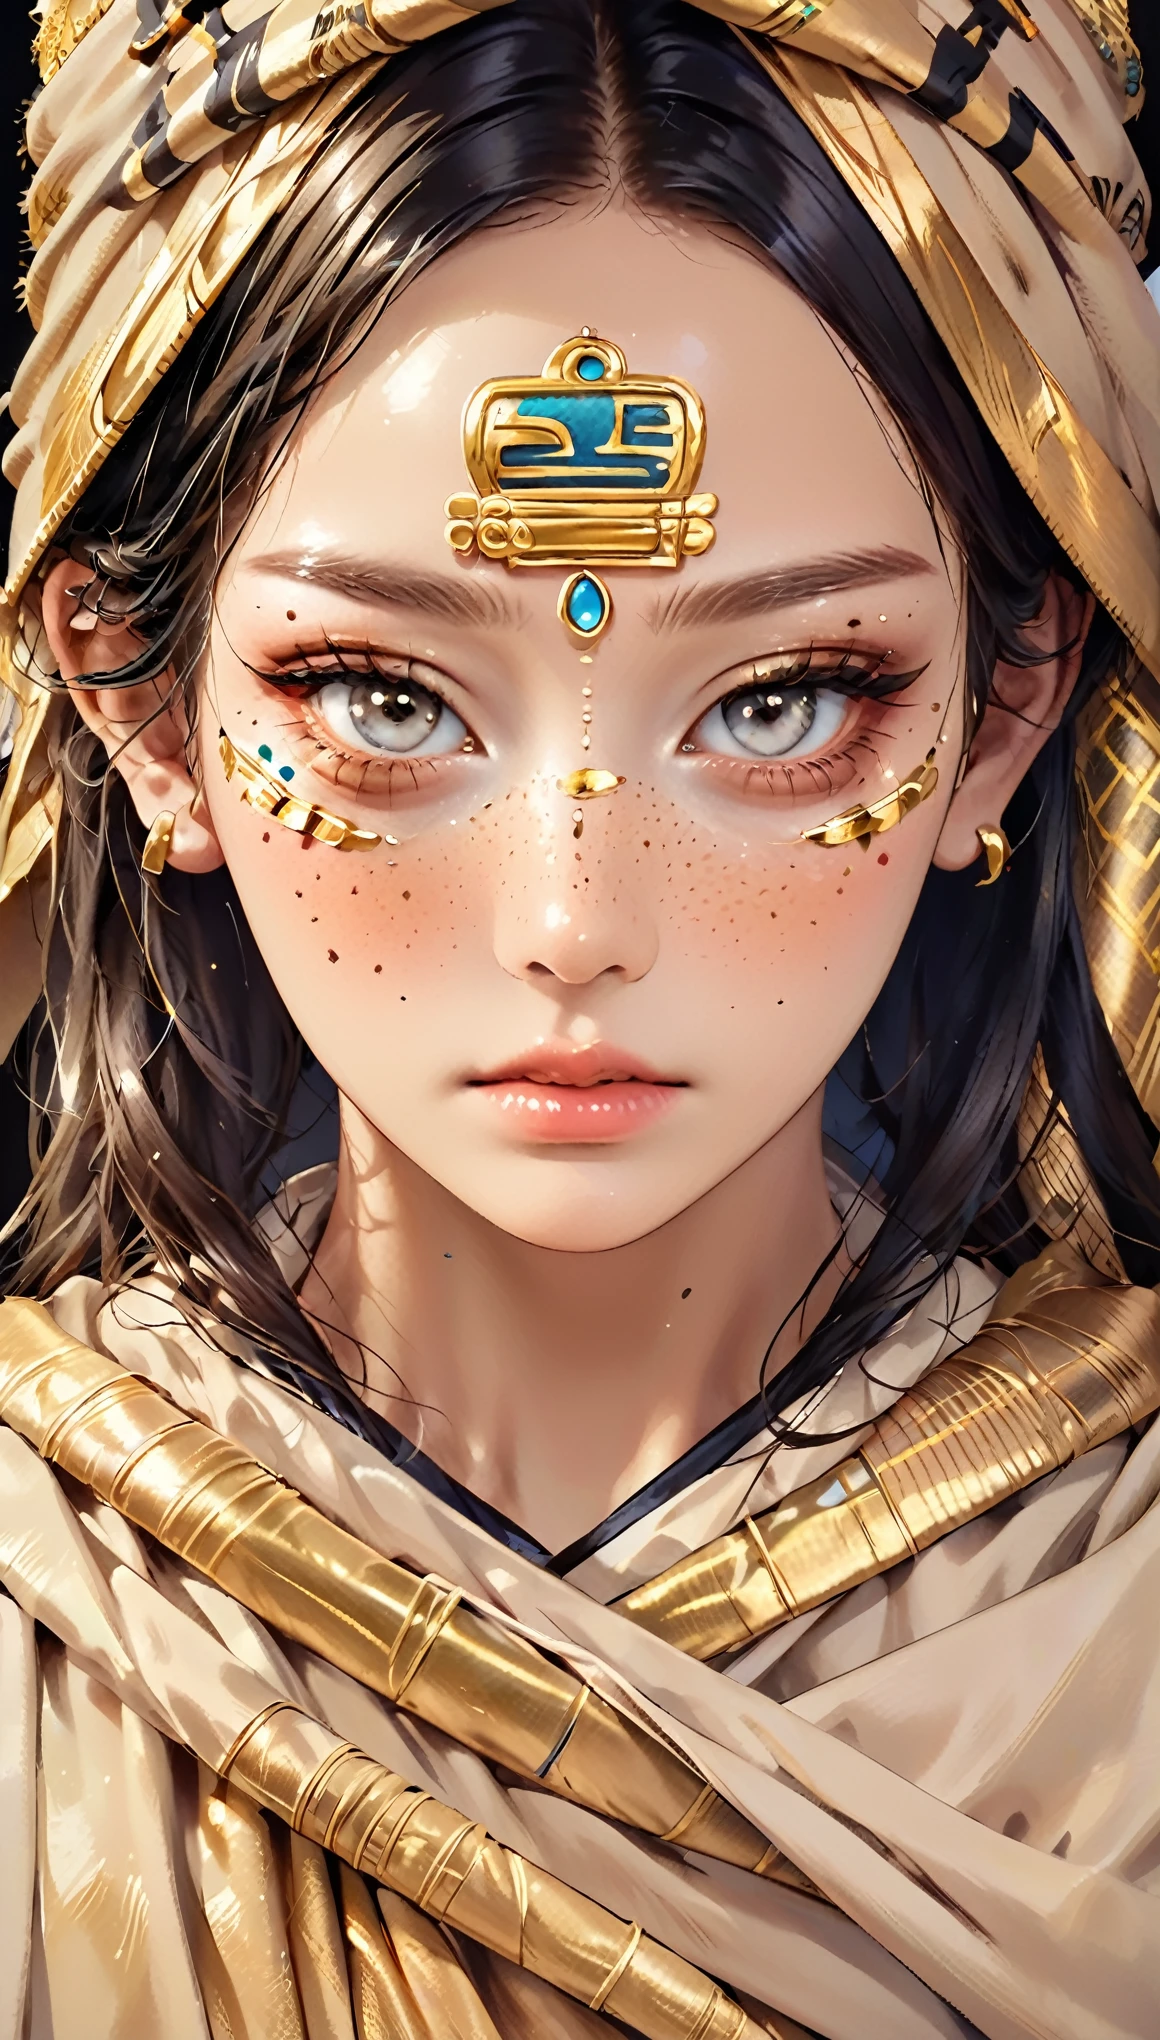 "(Beste Qualität,hohe Auflösung),Nahaufnahme des Gesichts einer Mumie,bedeckt mit Bandagen mit goldenen Hieroglyphen,(Ausführlich:1.1),(helle und intensive Farben:1.1),(Realist:1.1) grafischer Kunststil,Erschreckend,Augenhöhlen mit glänzenden goldenen Augen,Ausführlich wrinkles, Dunkle Augenringe."